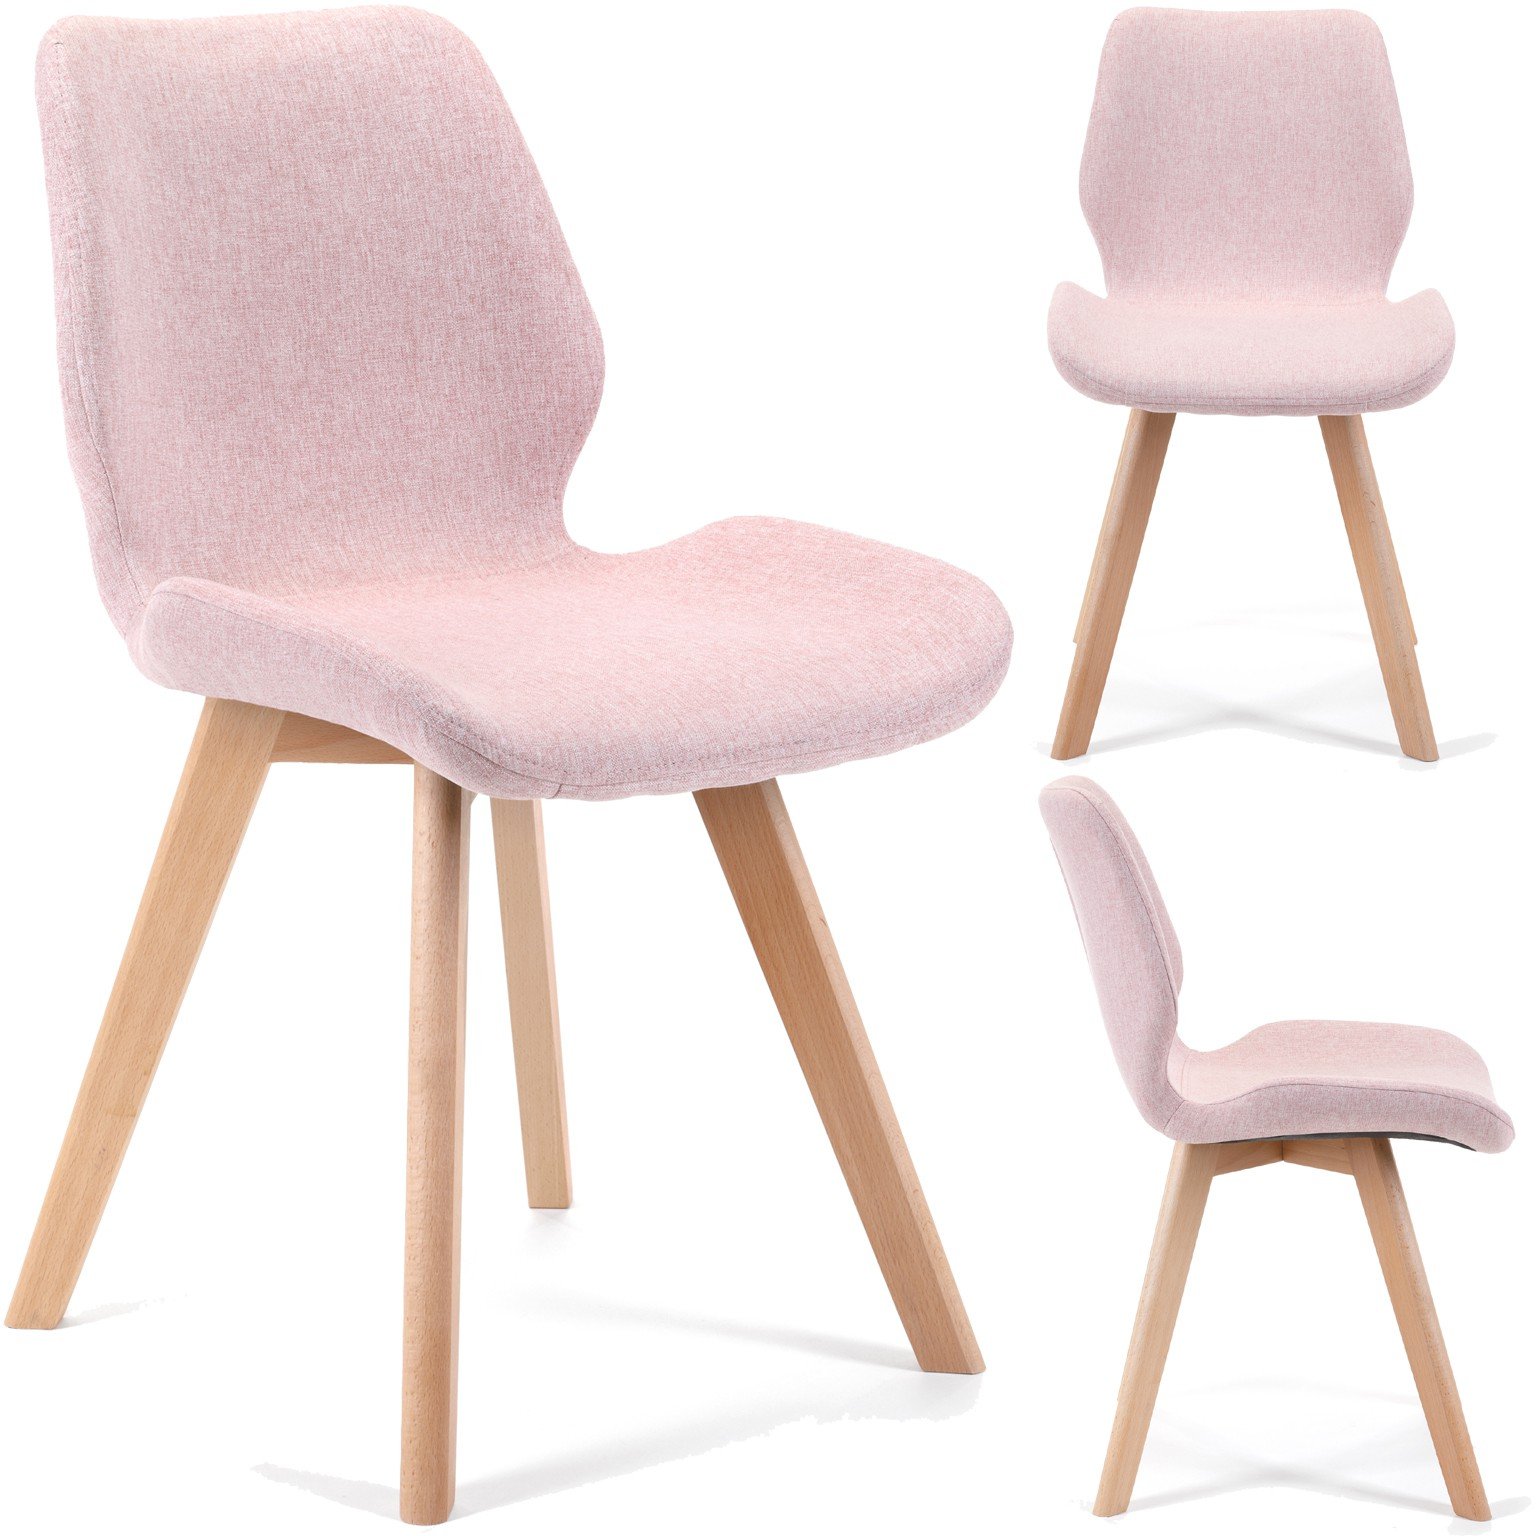 4-rių kėdžių komplektas SJ.0159, rožinis - 6